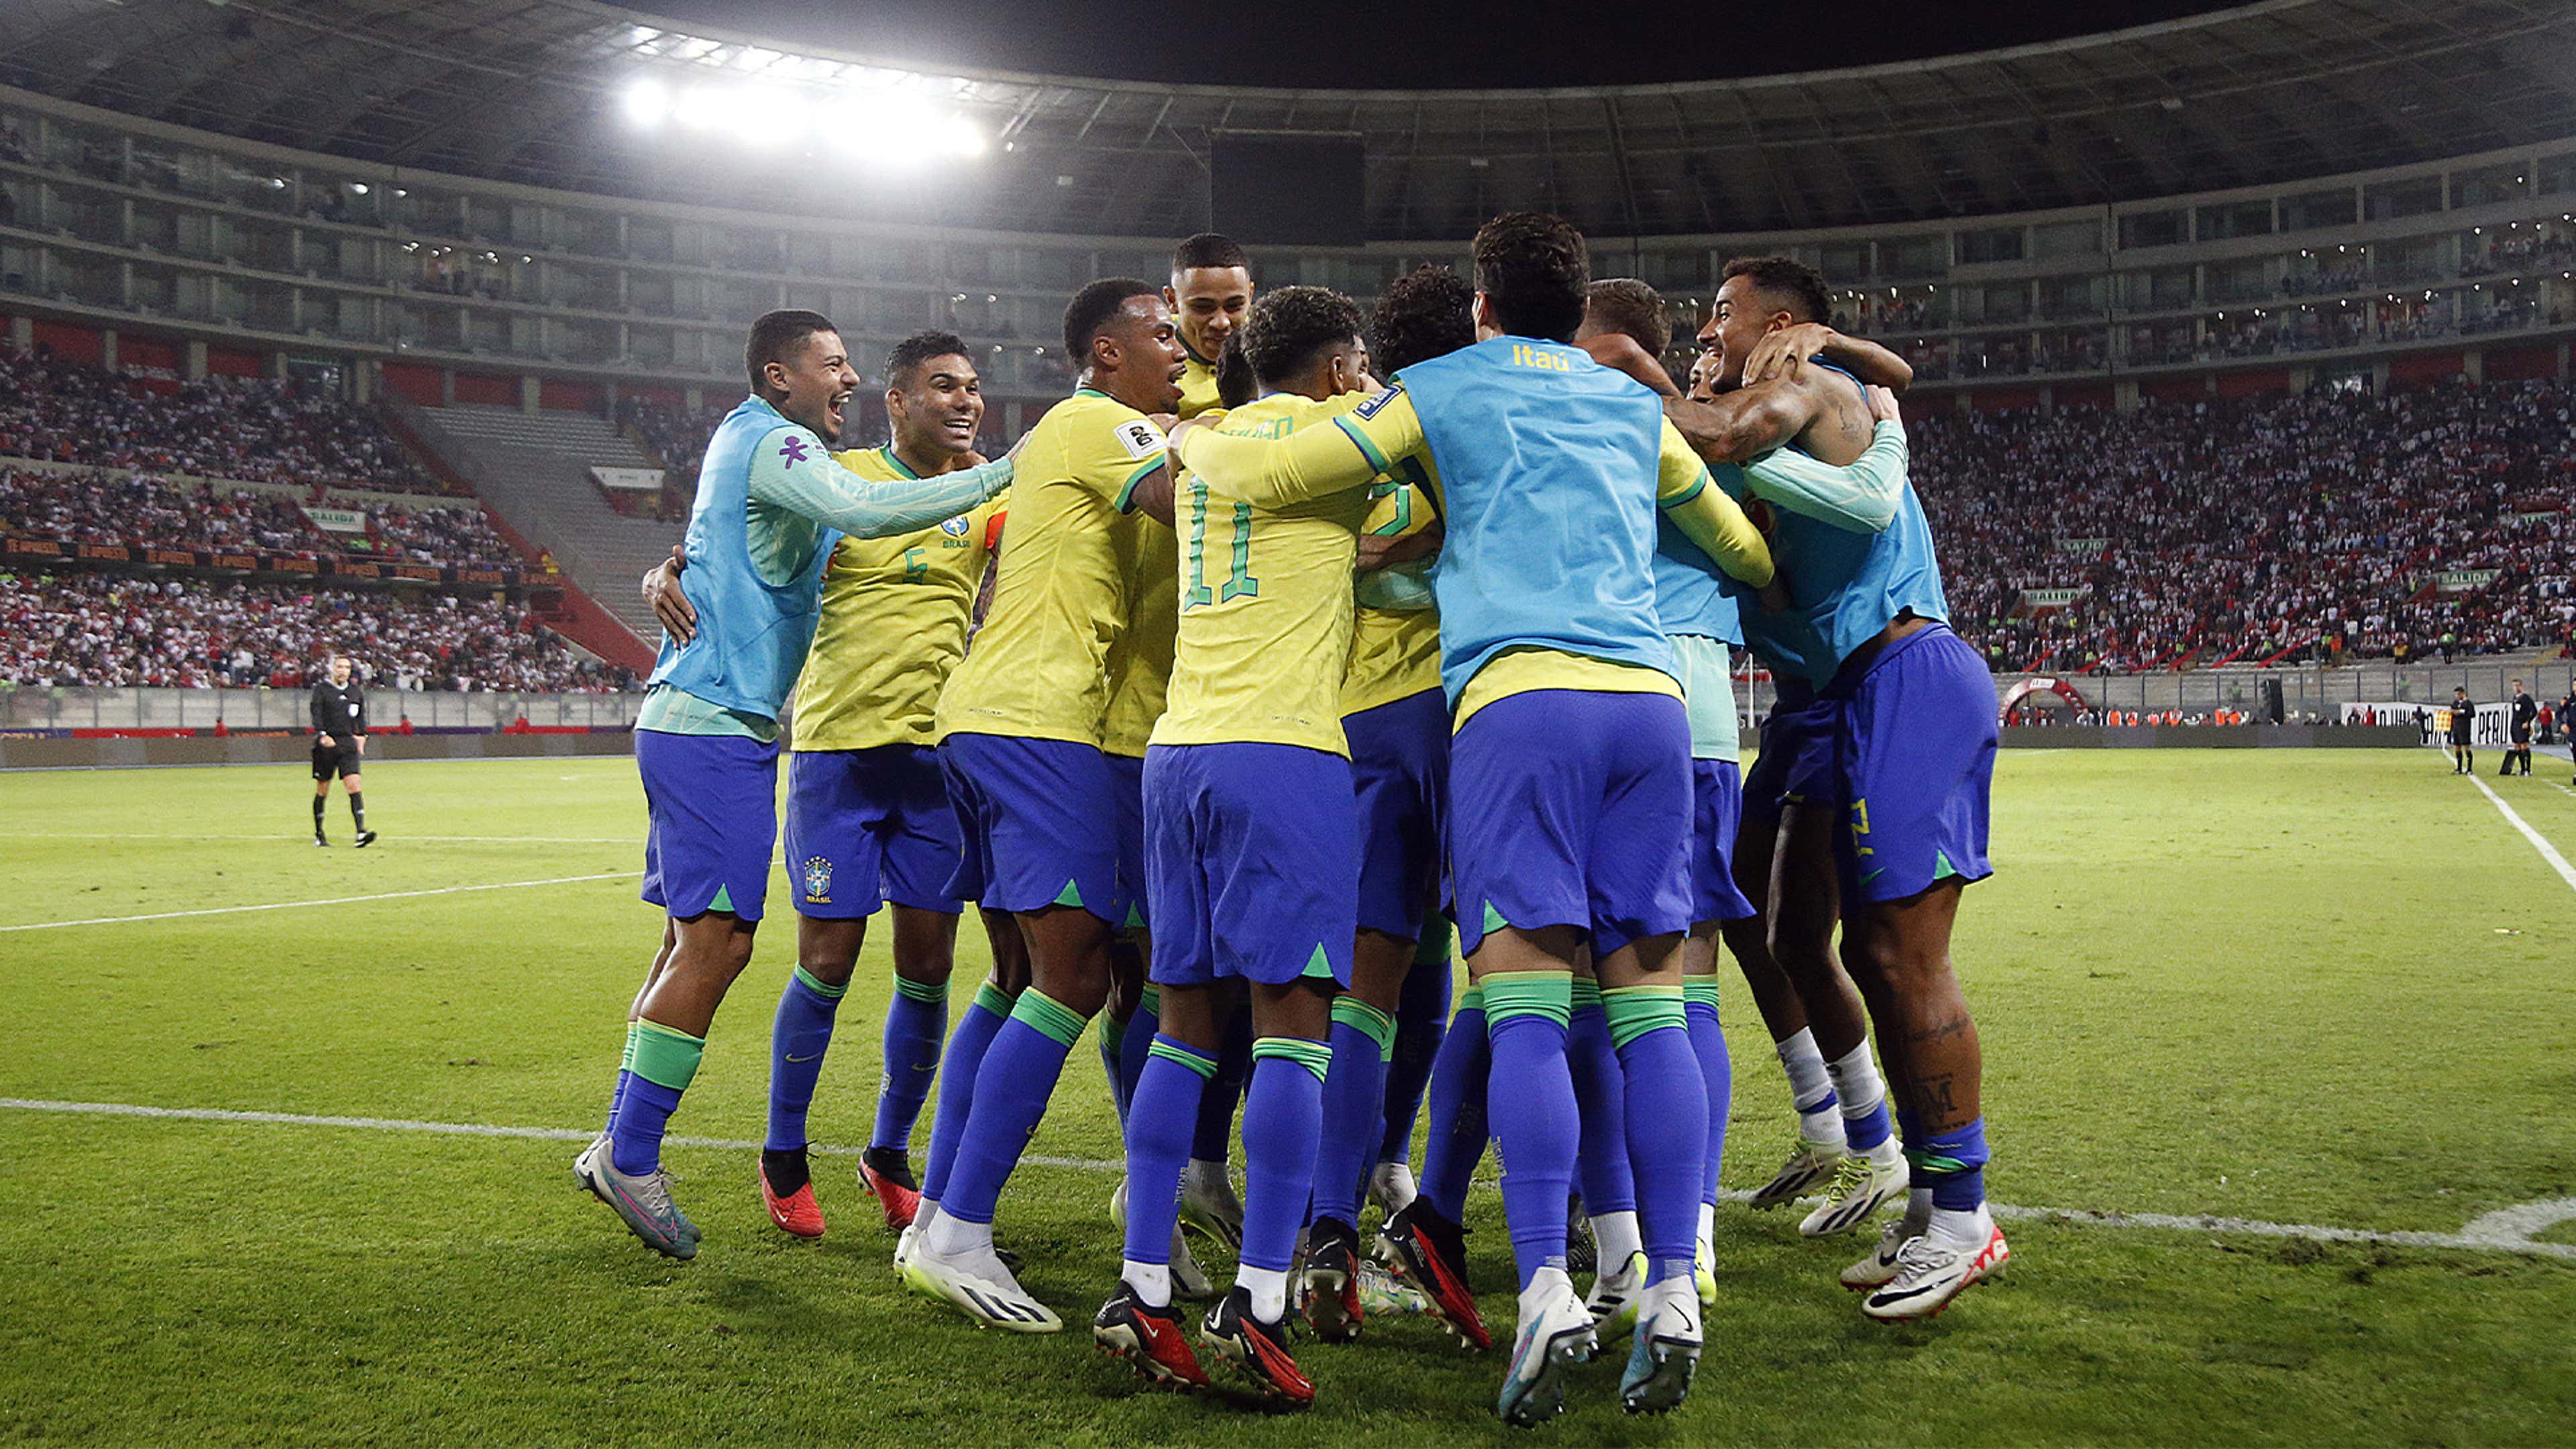 A escalação do Brasil para o próximo jogo